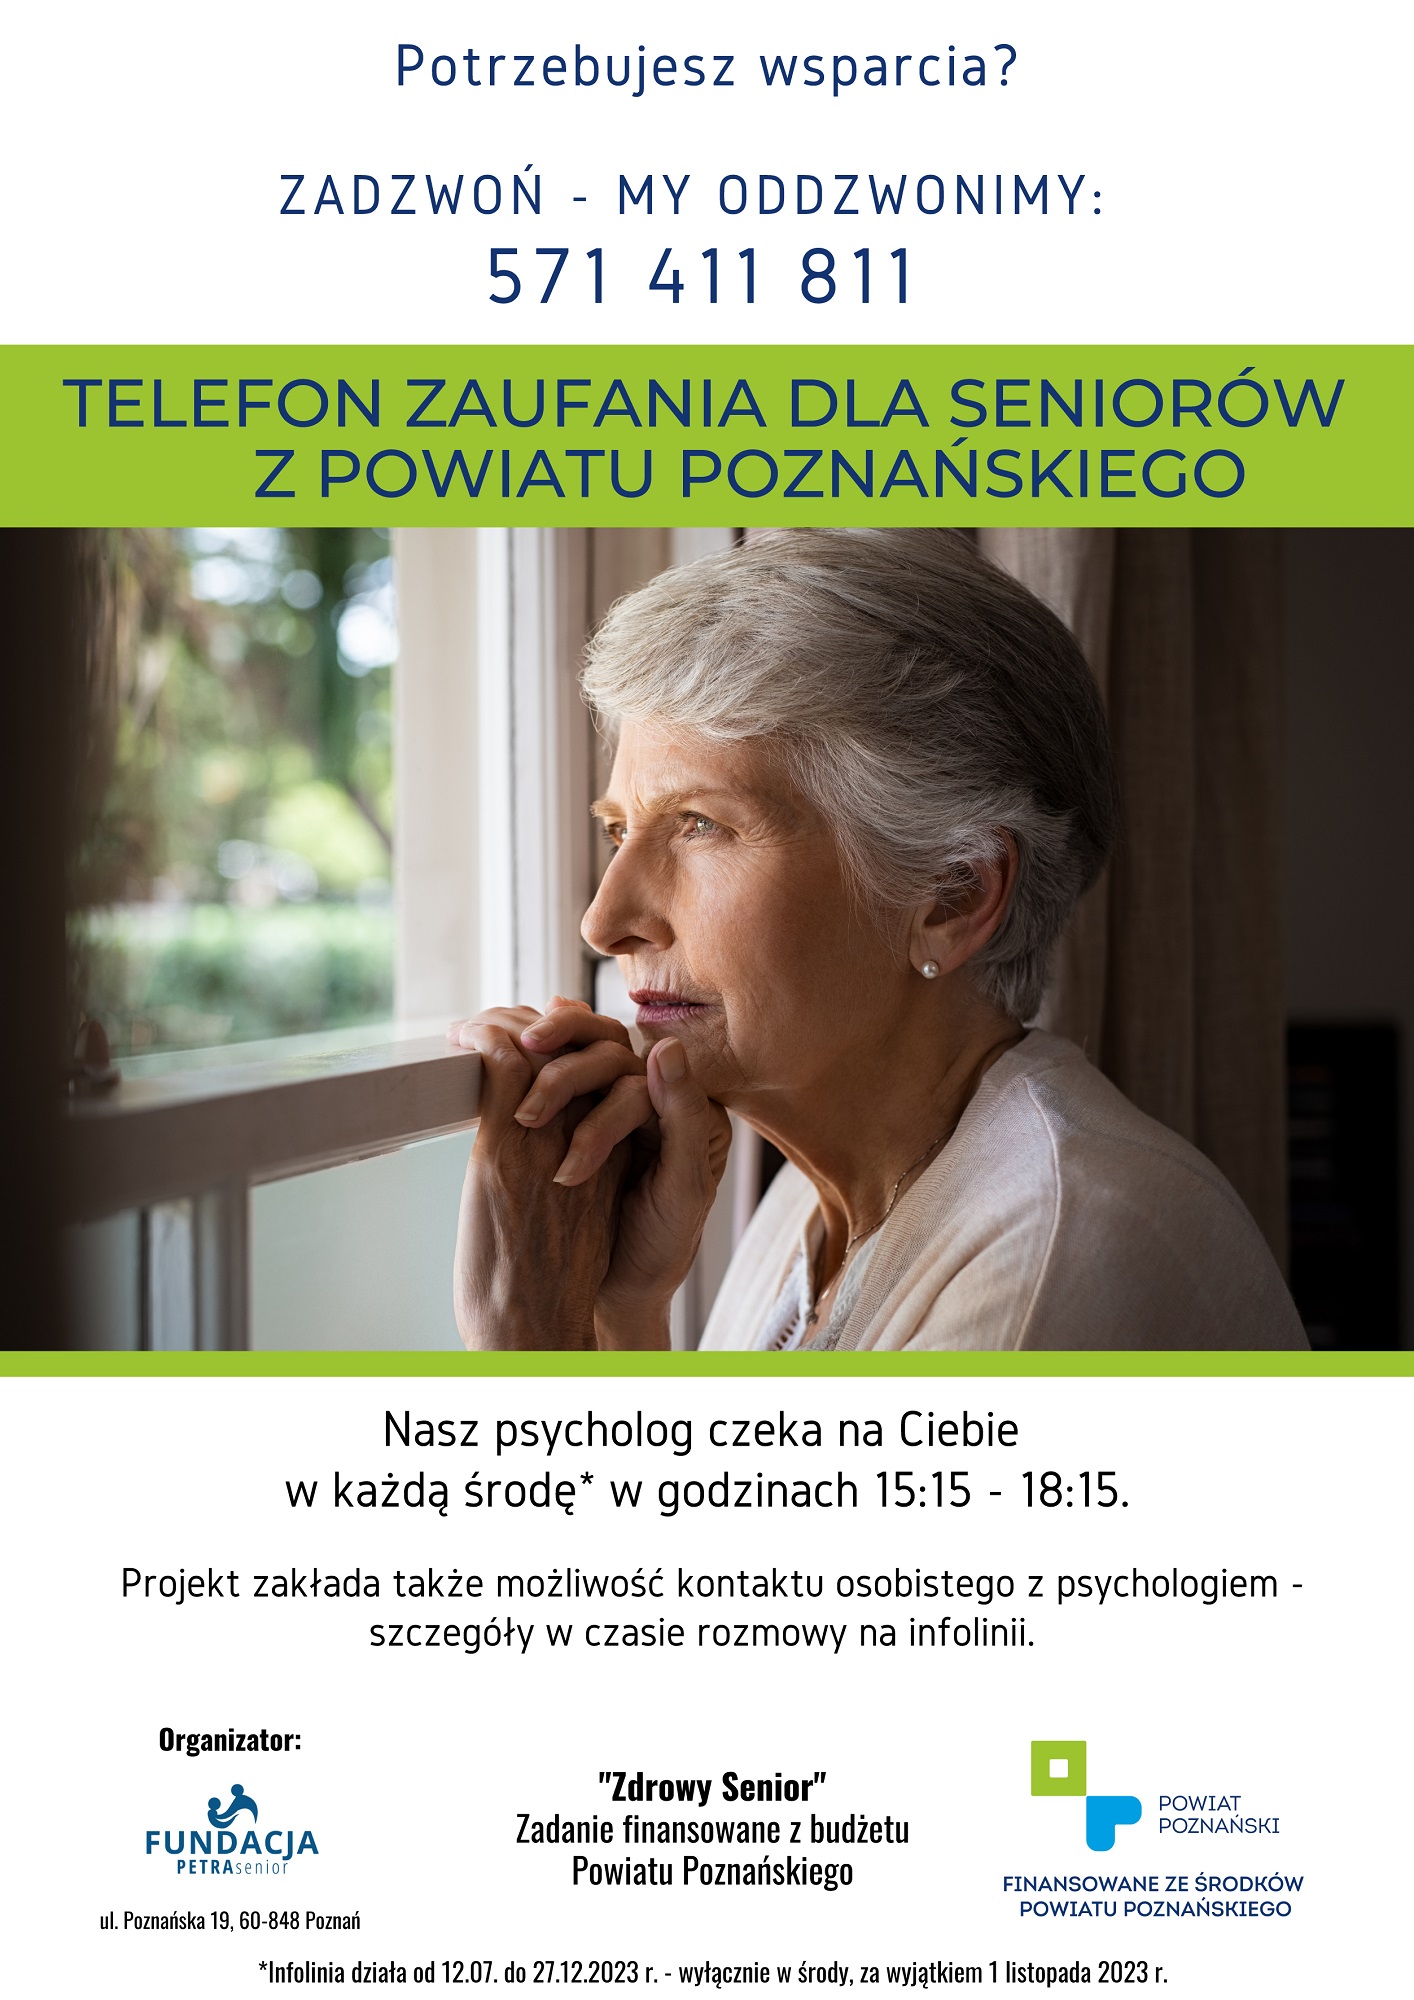 Zdrowy Senior - wsparcie psychologiczne